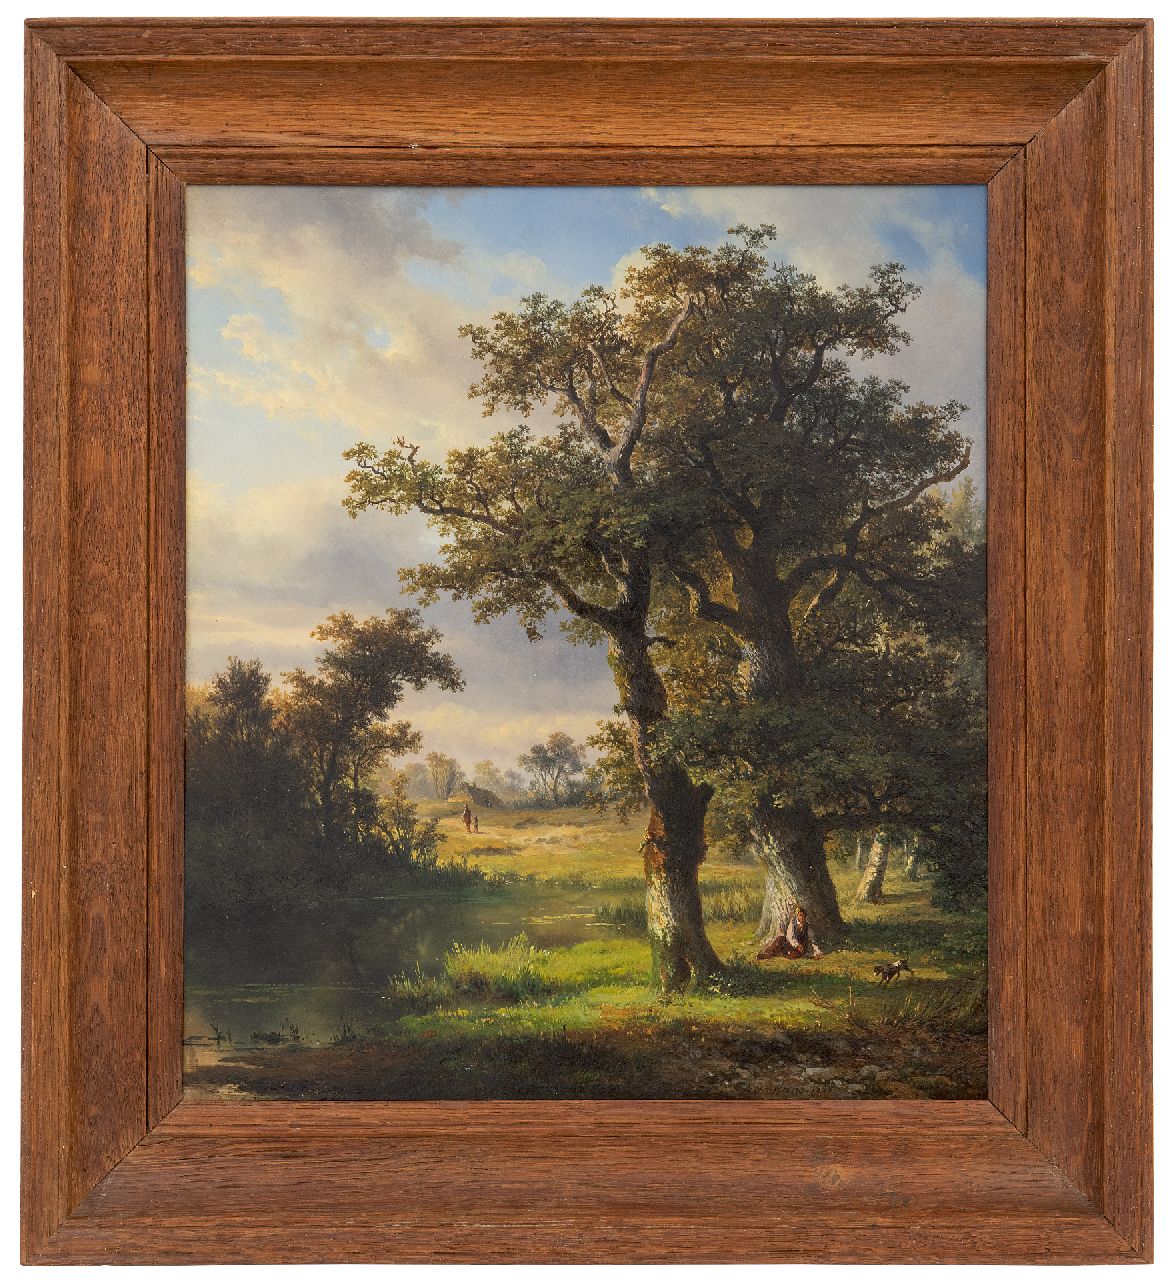 Ortmans F.A.  | François Auguste Ortmans | Schilderijen te koop aangeboden | Zomerlandschap, olieverf op paneel 36,2 x 31,6 cm, gesigneerd rechtsonder en gedateerd 1850